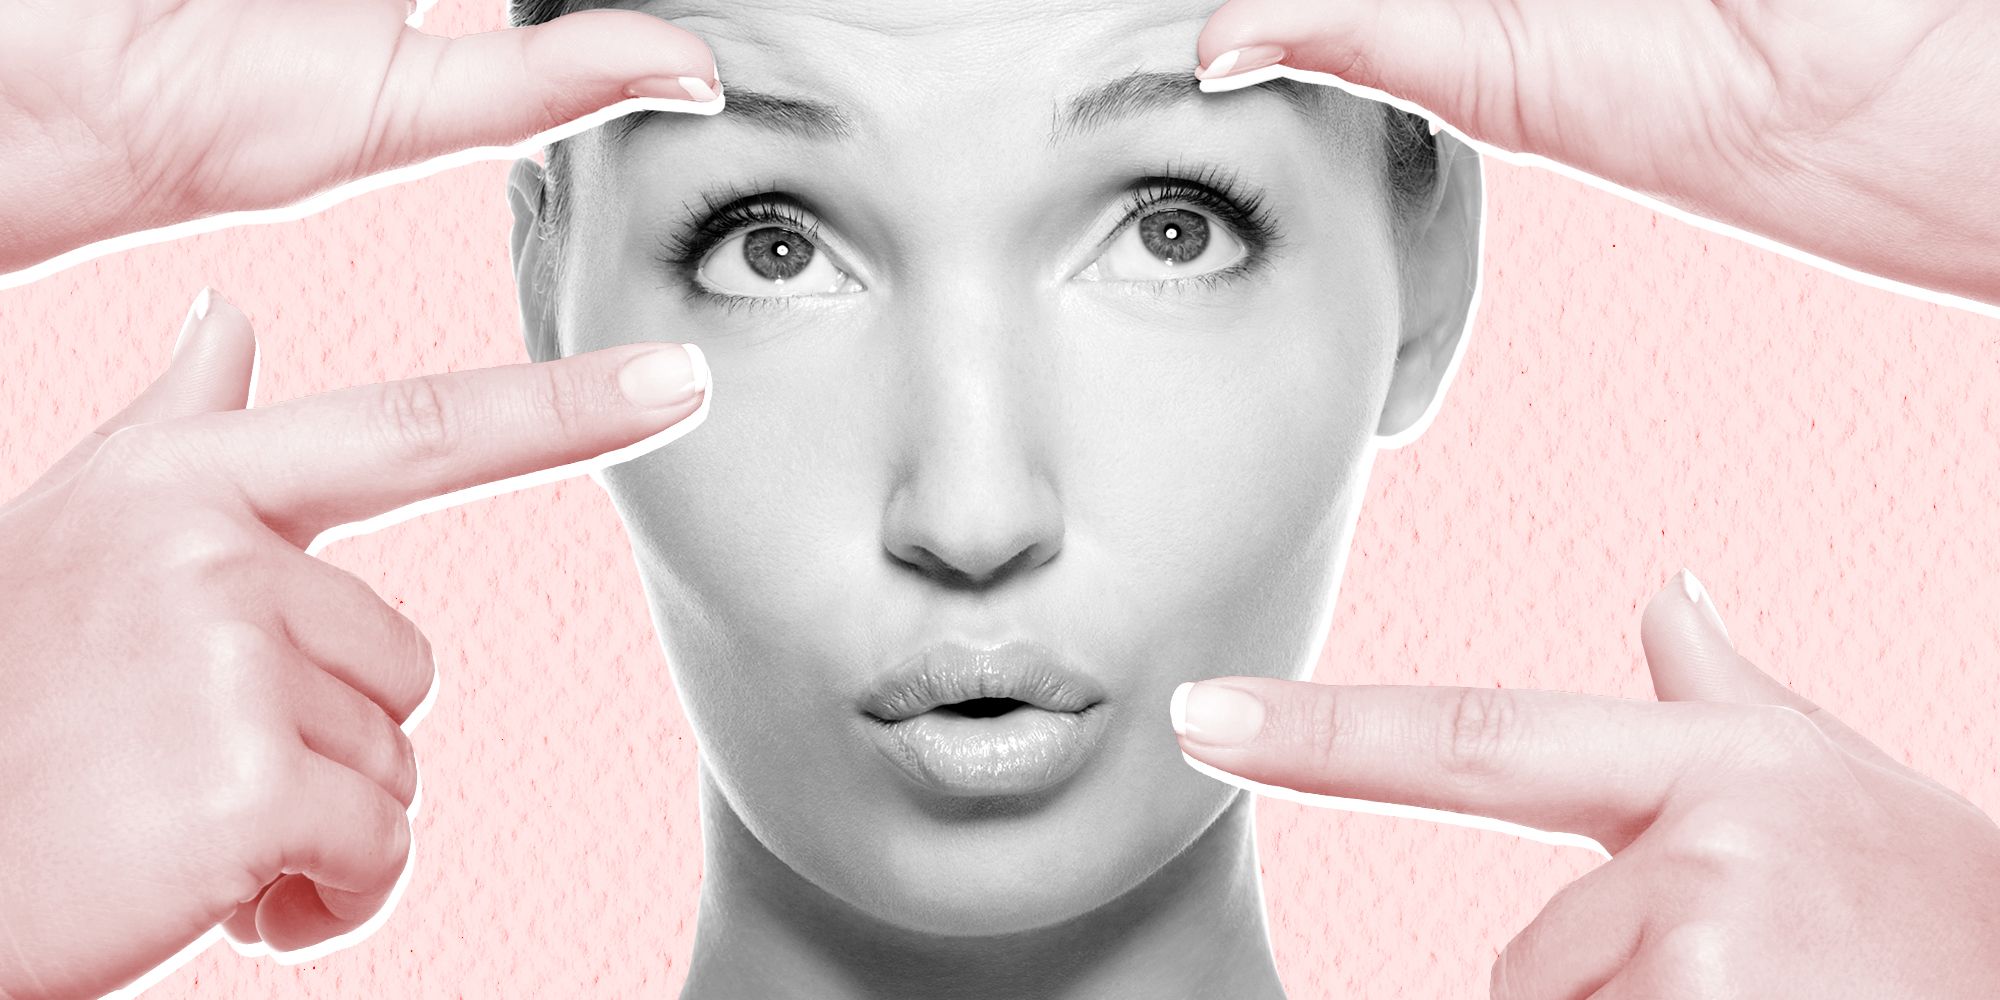 Do Facial Exercises Really Work? - How to Do Face Yoga